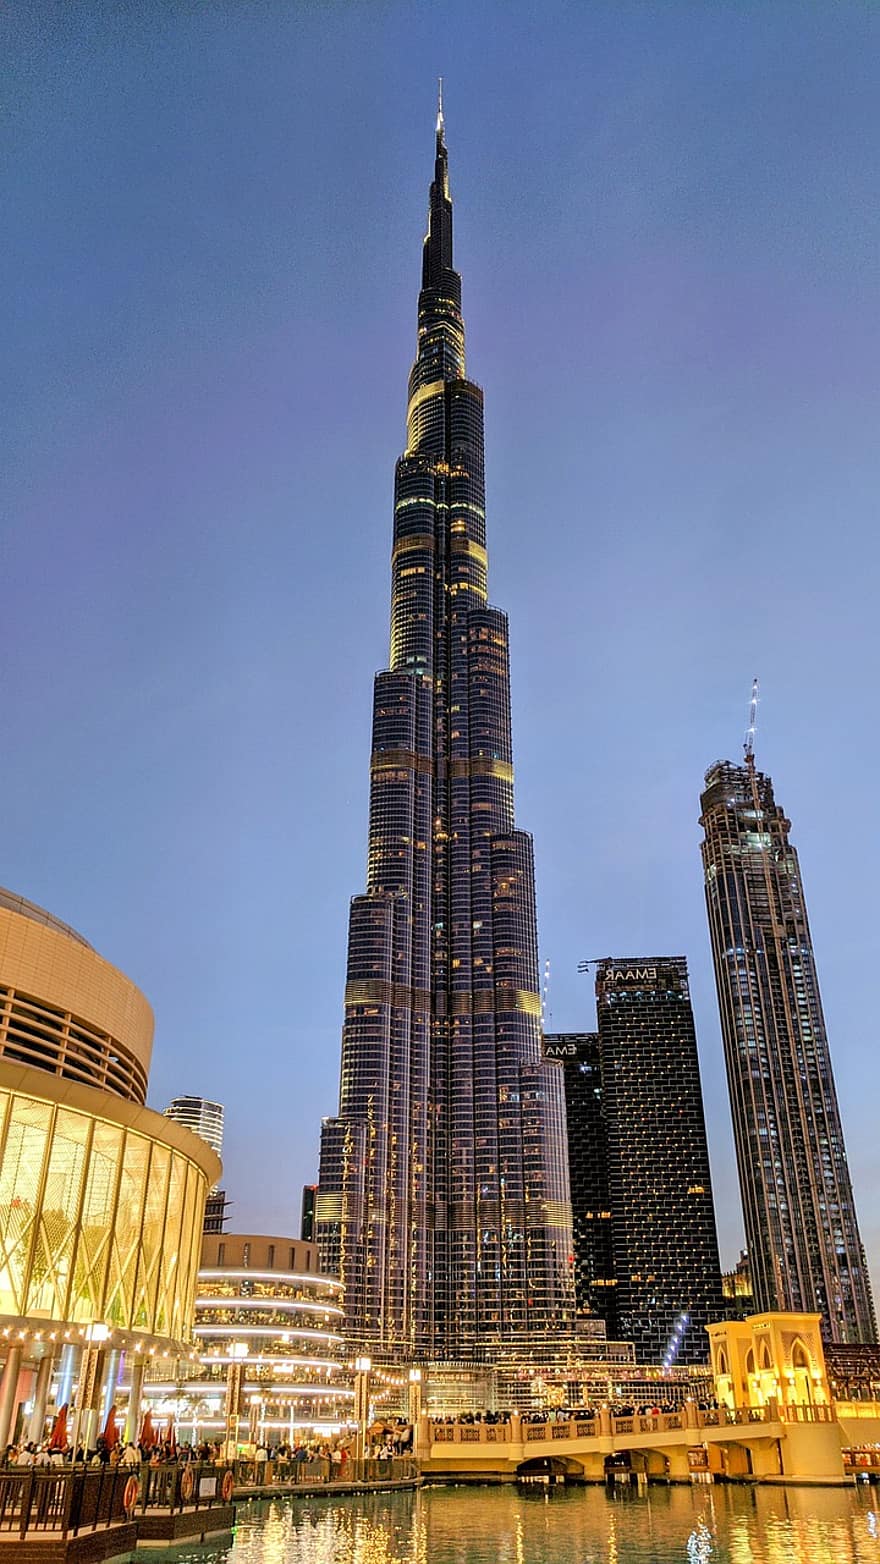 πόλη, ταξίδι, dubai, ο ΤΟΥΡΙΣΜΟΣ, κτίρια, αρχιτεκτονική, burj khalifa, burj dubai, Emirates UAe, ουρανοξύστης, dubai mall